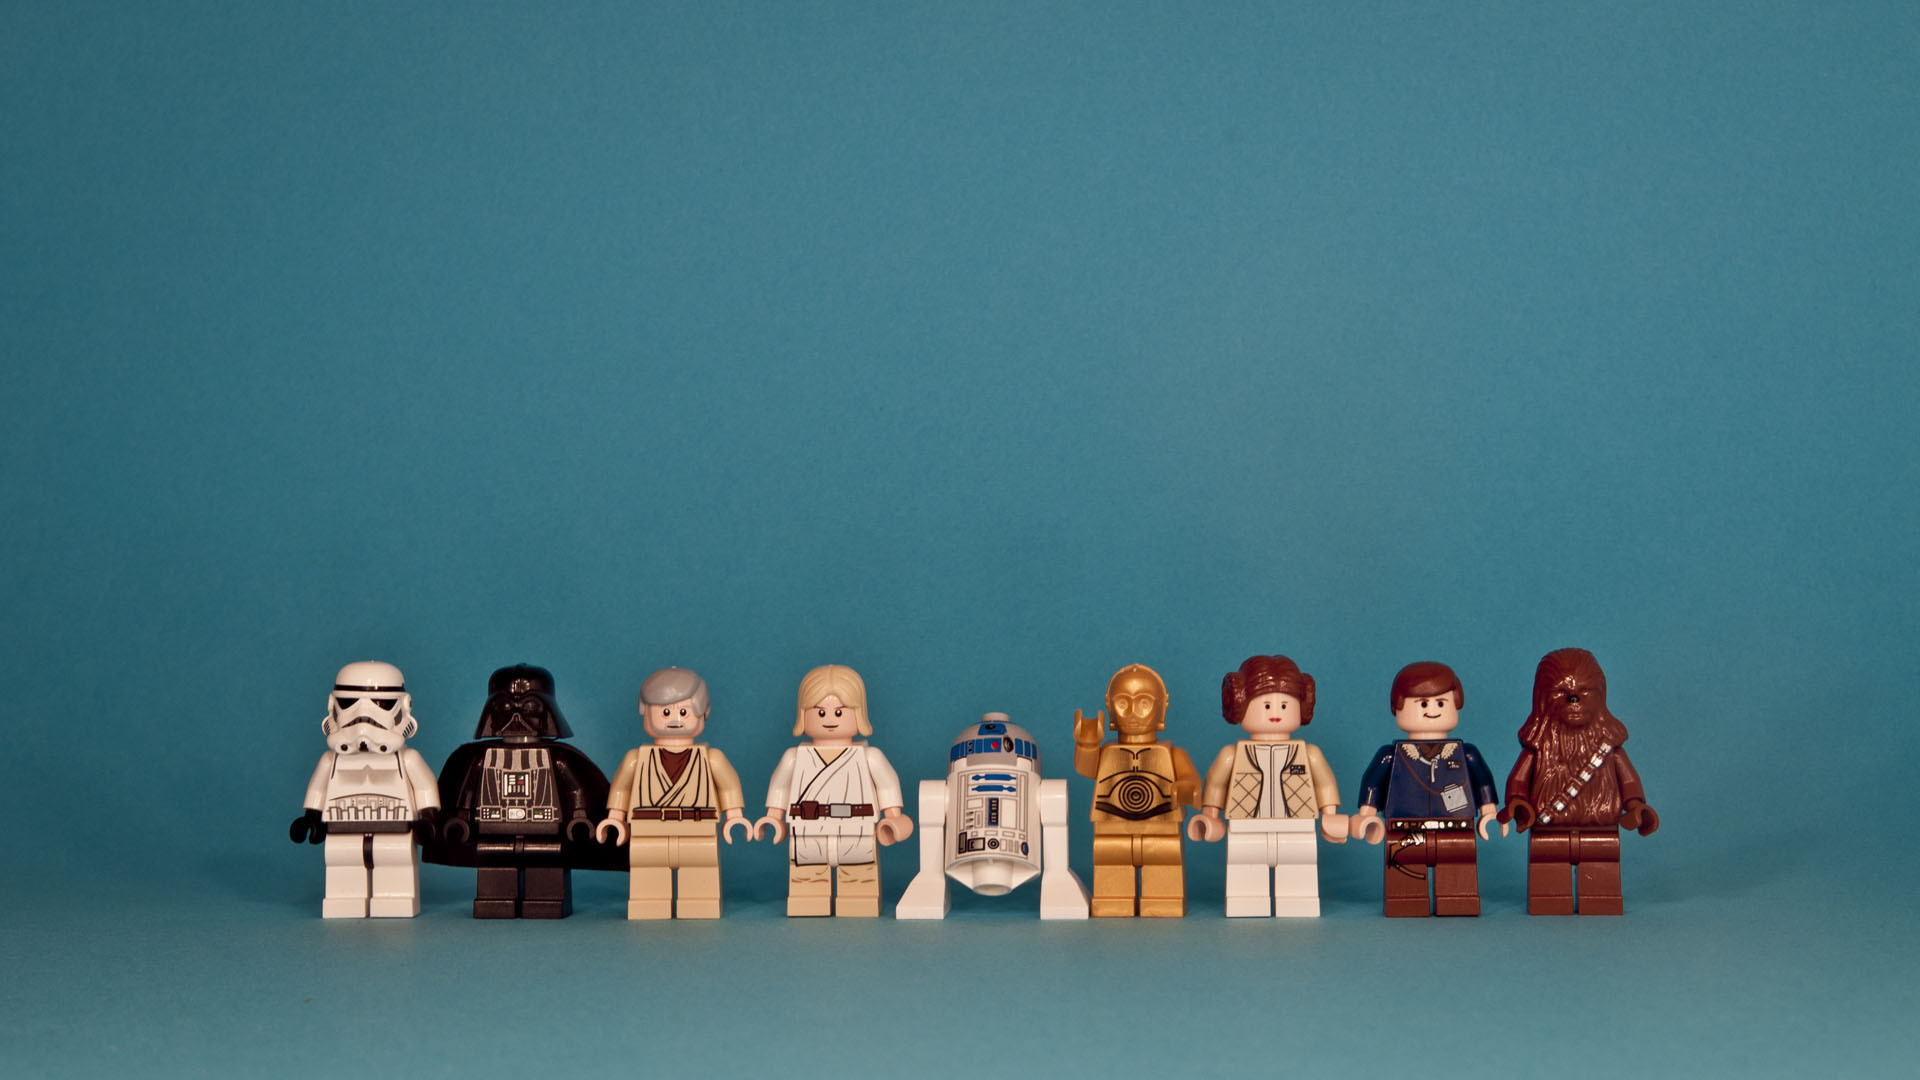 Скачать обои Lego Star Wars Ii: Оригинальная Трилогия на телефон бесплатно